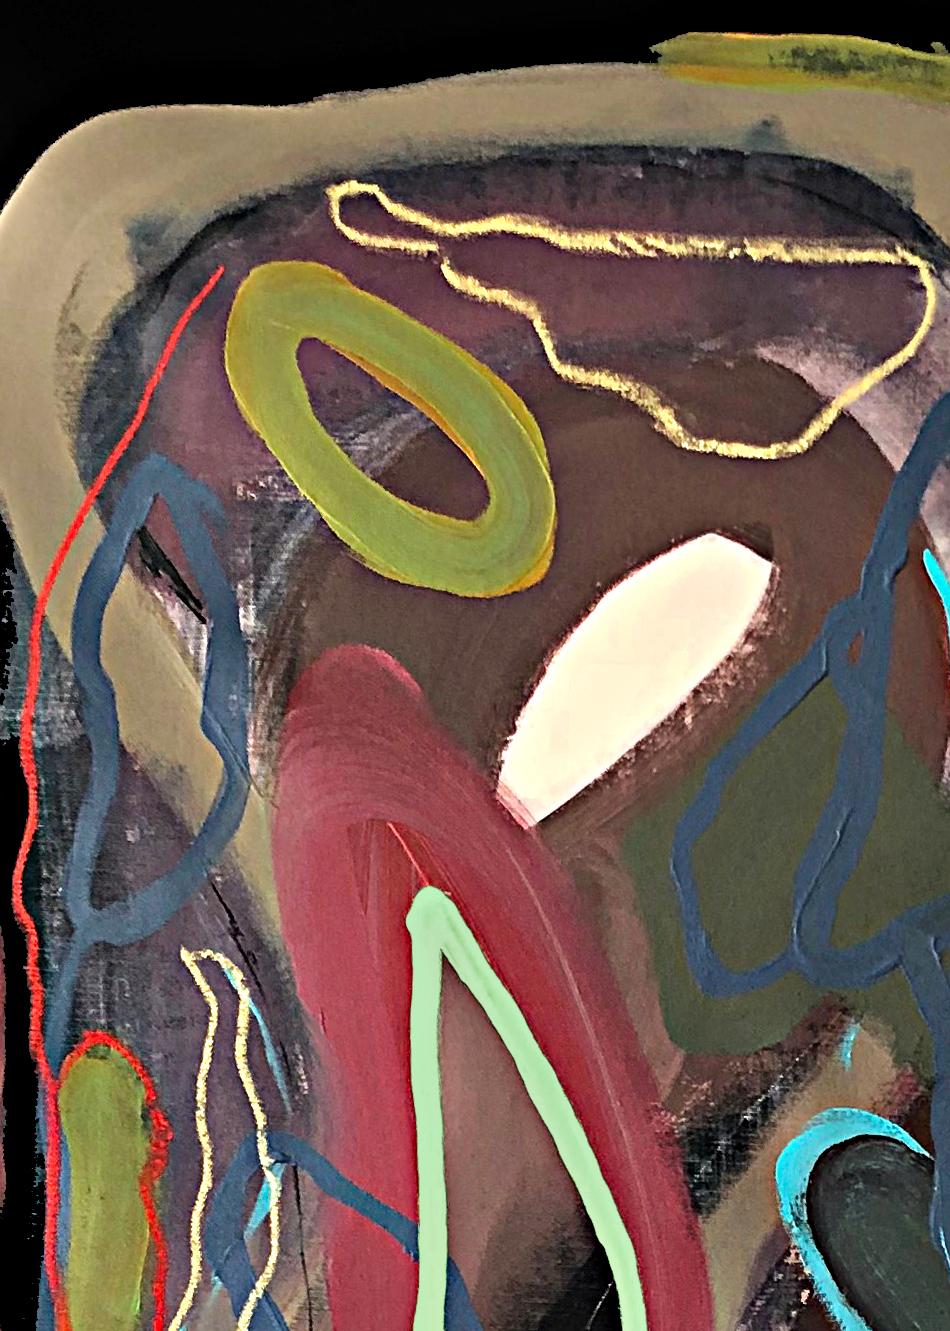 NEXA #2, 2023 von Alec Franco
Acryl und Pastell auf schwarzer Leinwand
Bildgröße: 104 cm H x 76 cm B
Medien mischen
Ungerahmt

Signiert vom Künstler
_______
Die Werke des Künstlers basieren auf der Zeit und auf informellen ästhetischen Prinzipien,